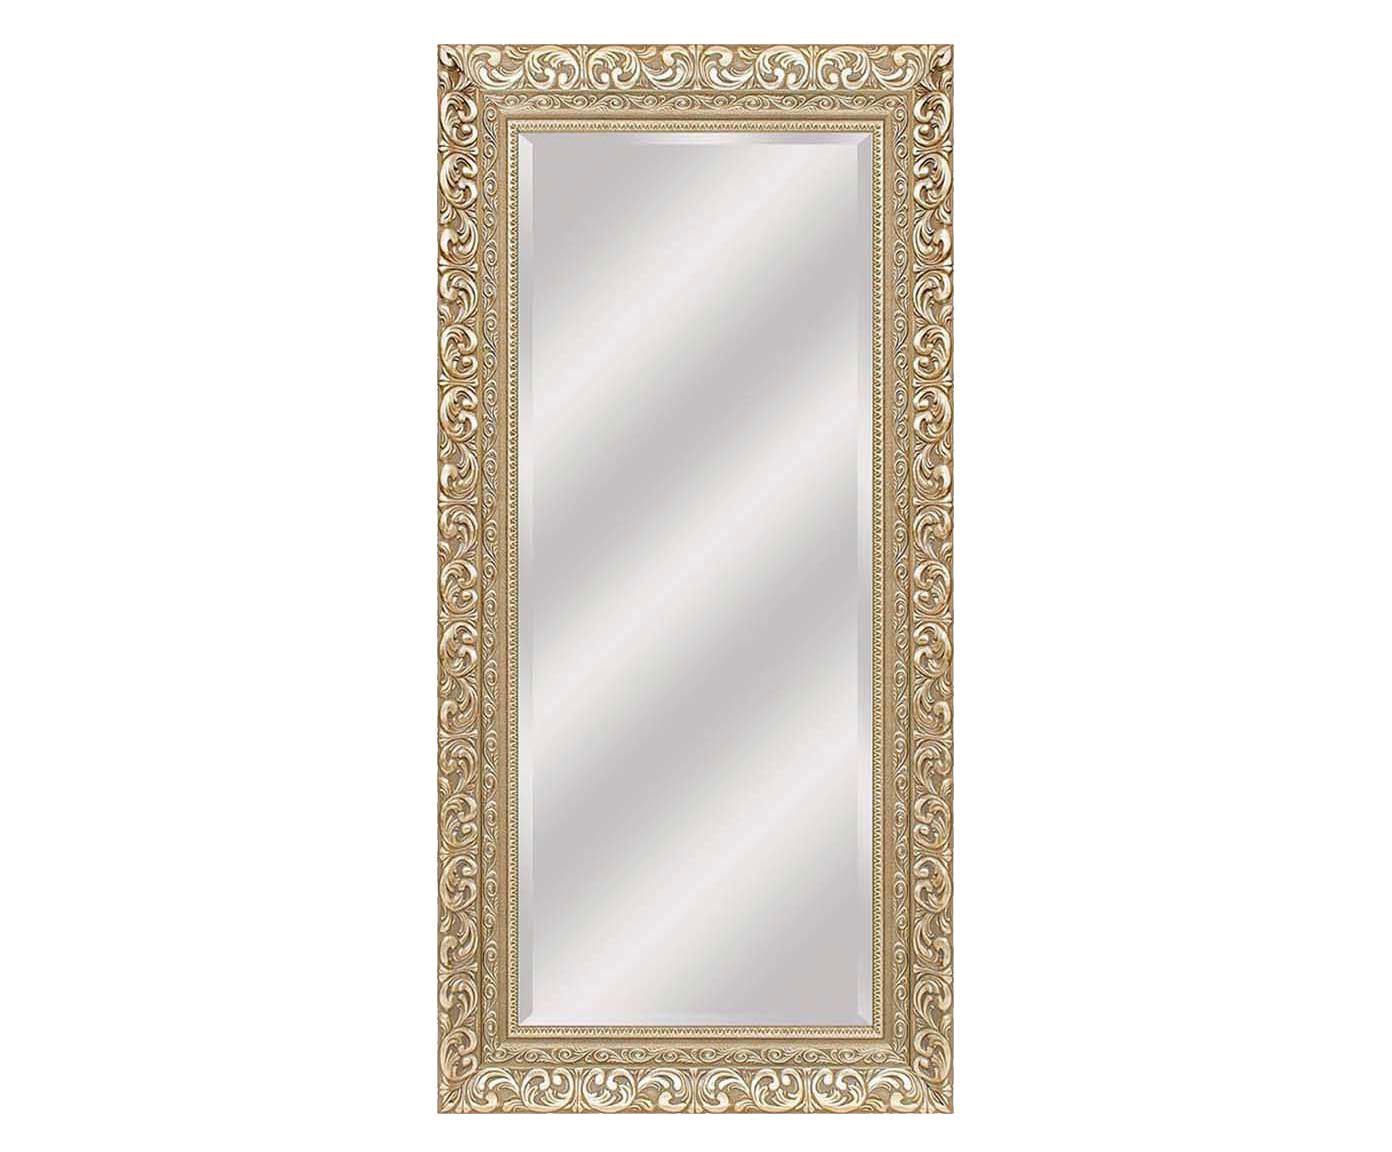 Espelho andrad lana - 85x175cm | Westwing.com.br